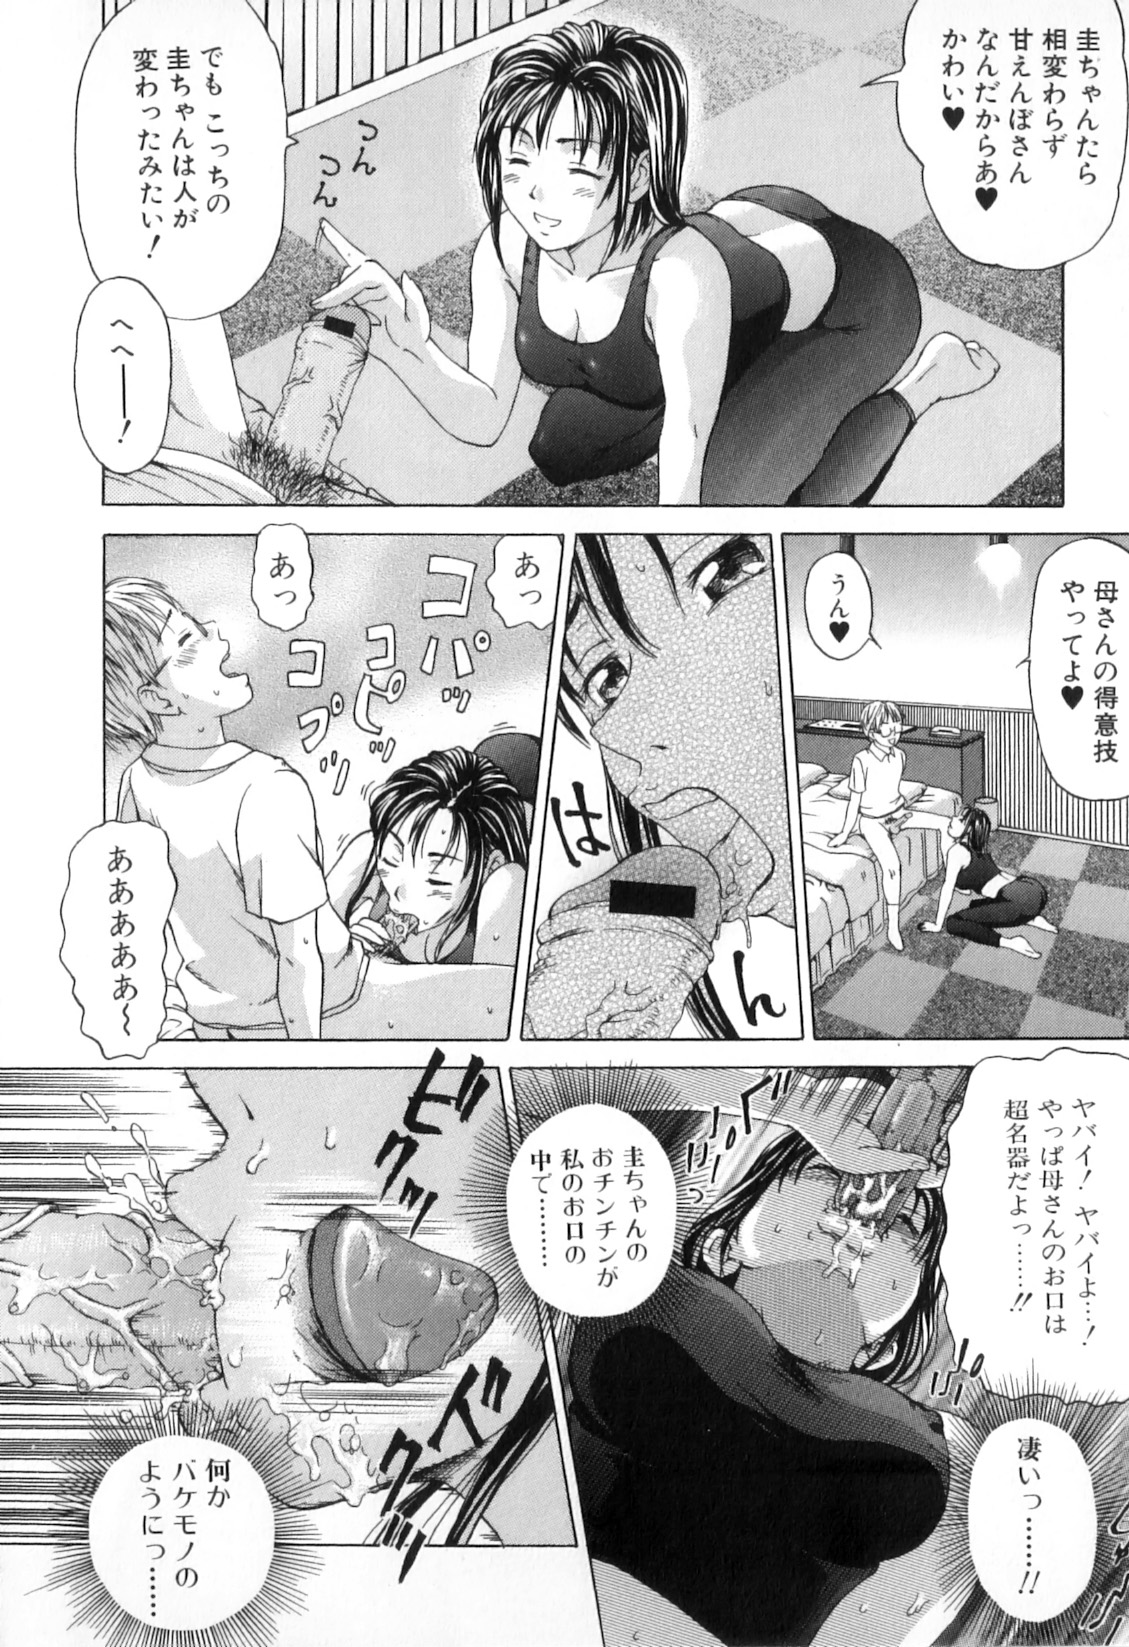 [Anthology] Boshi Chijou Kitan 2 page 30 full